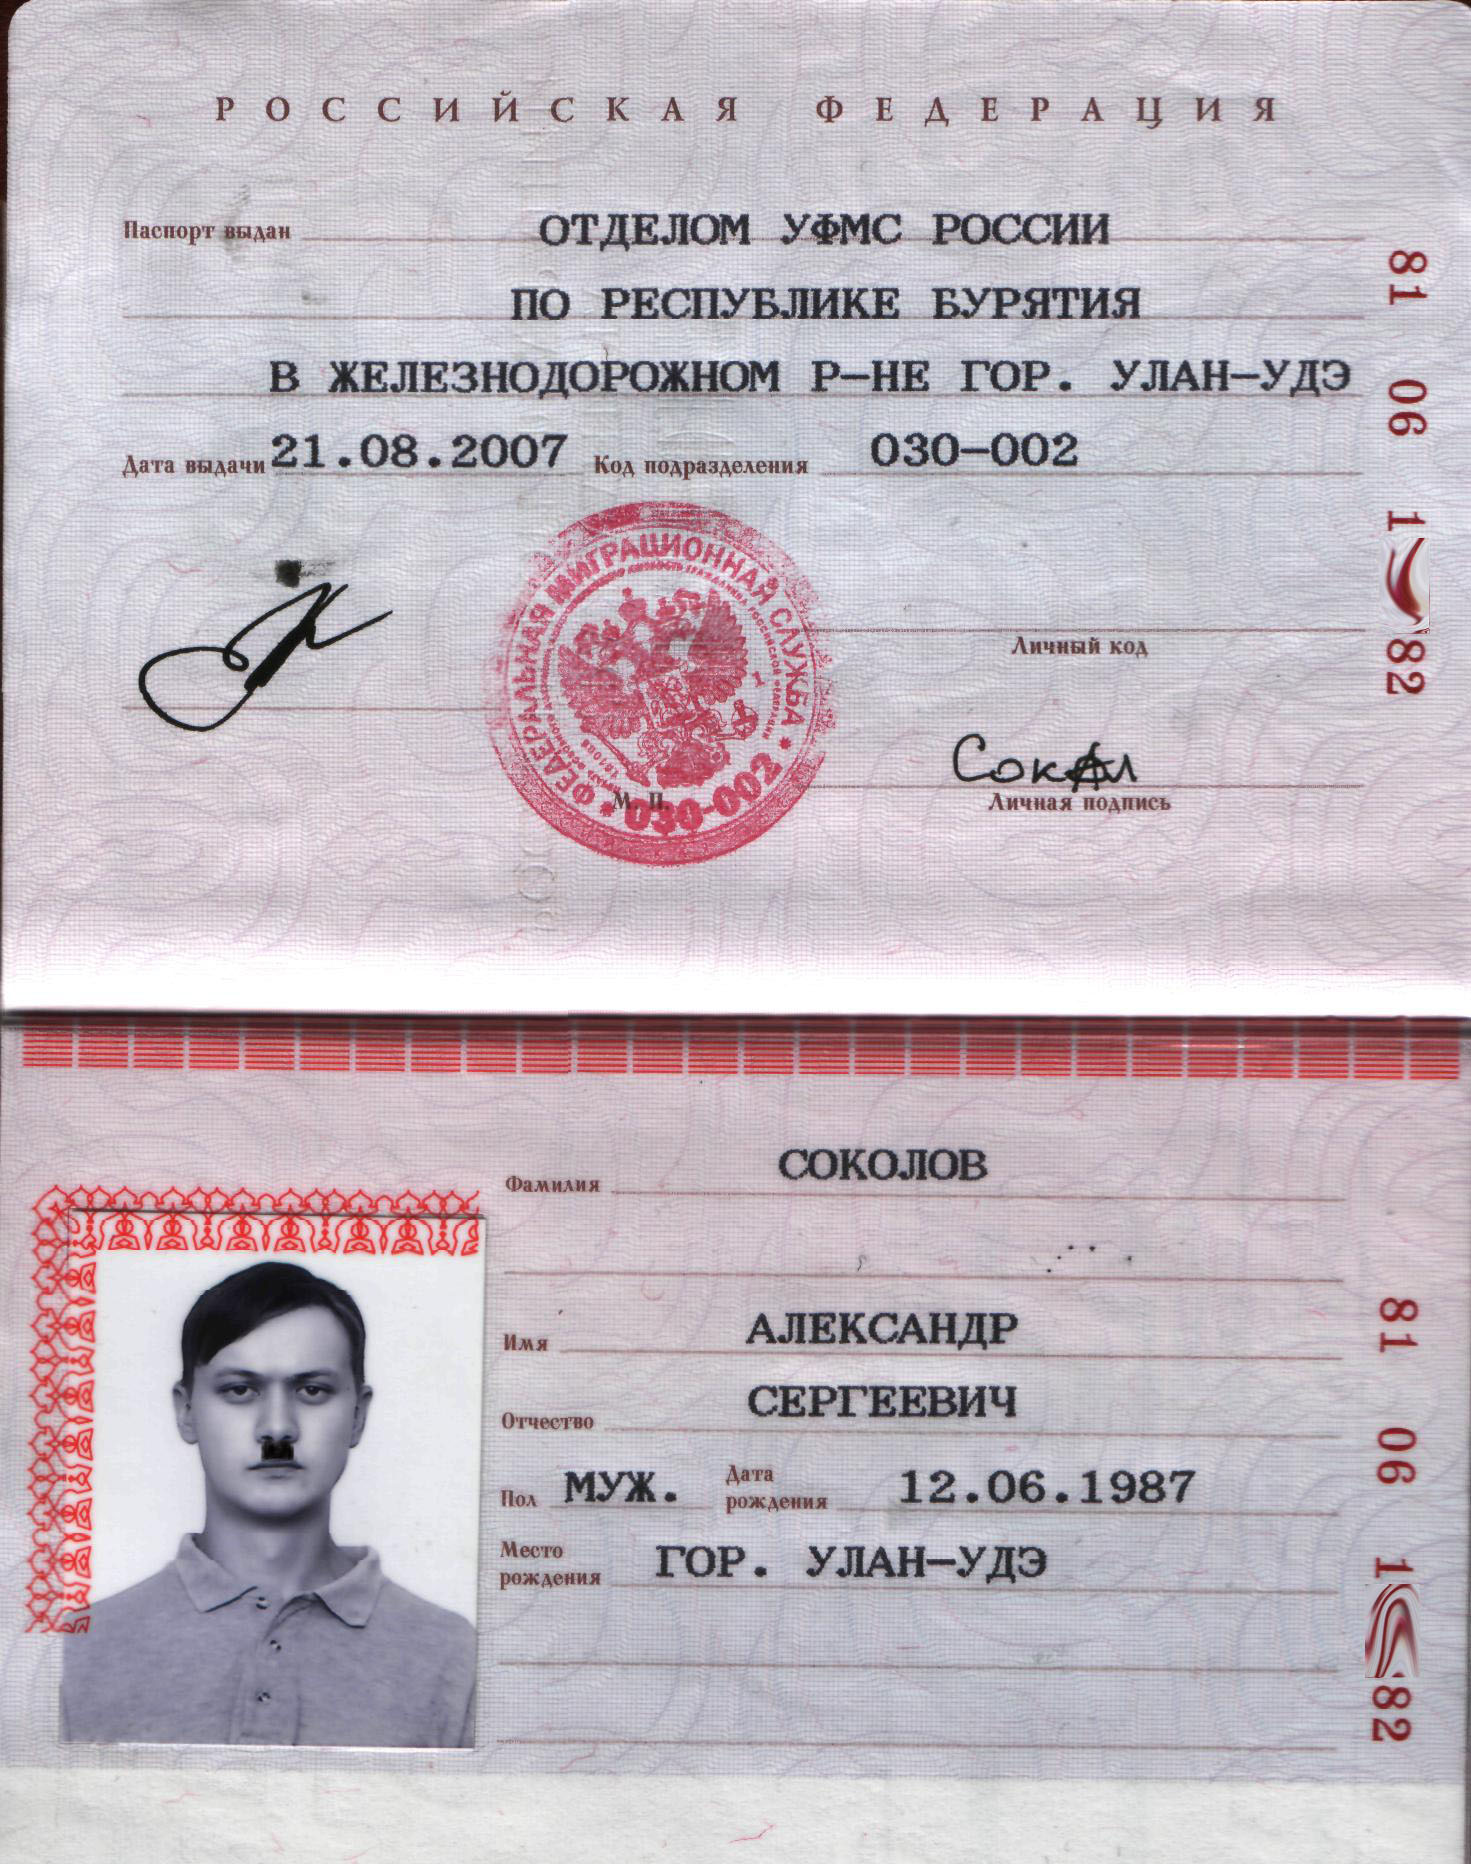 фото на паспорт киров адреса